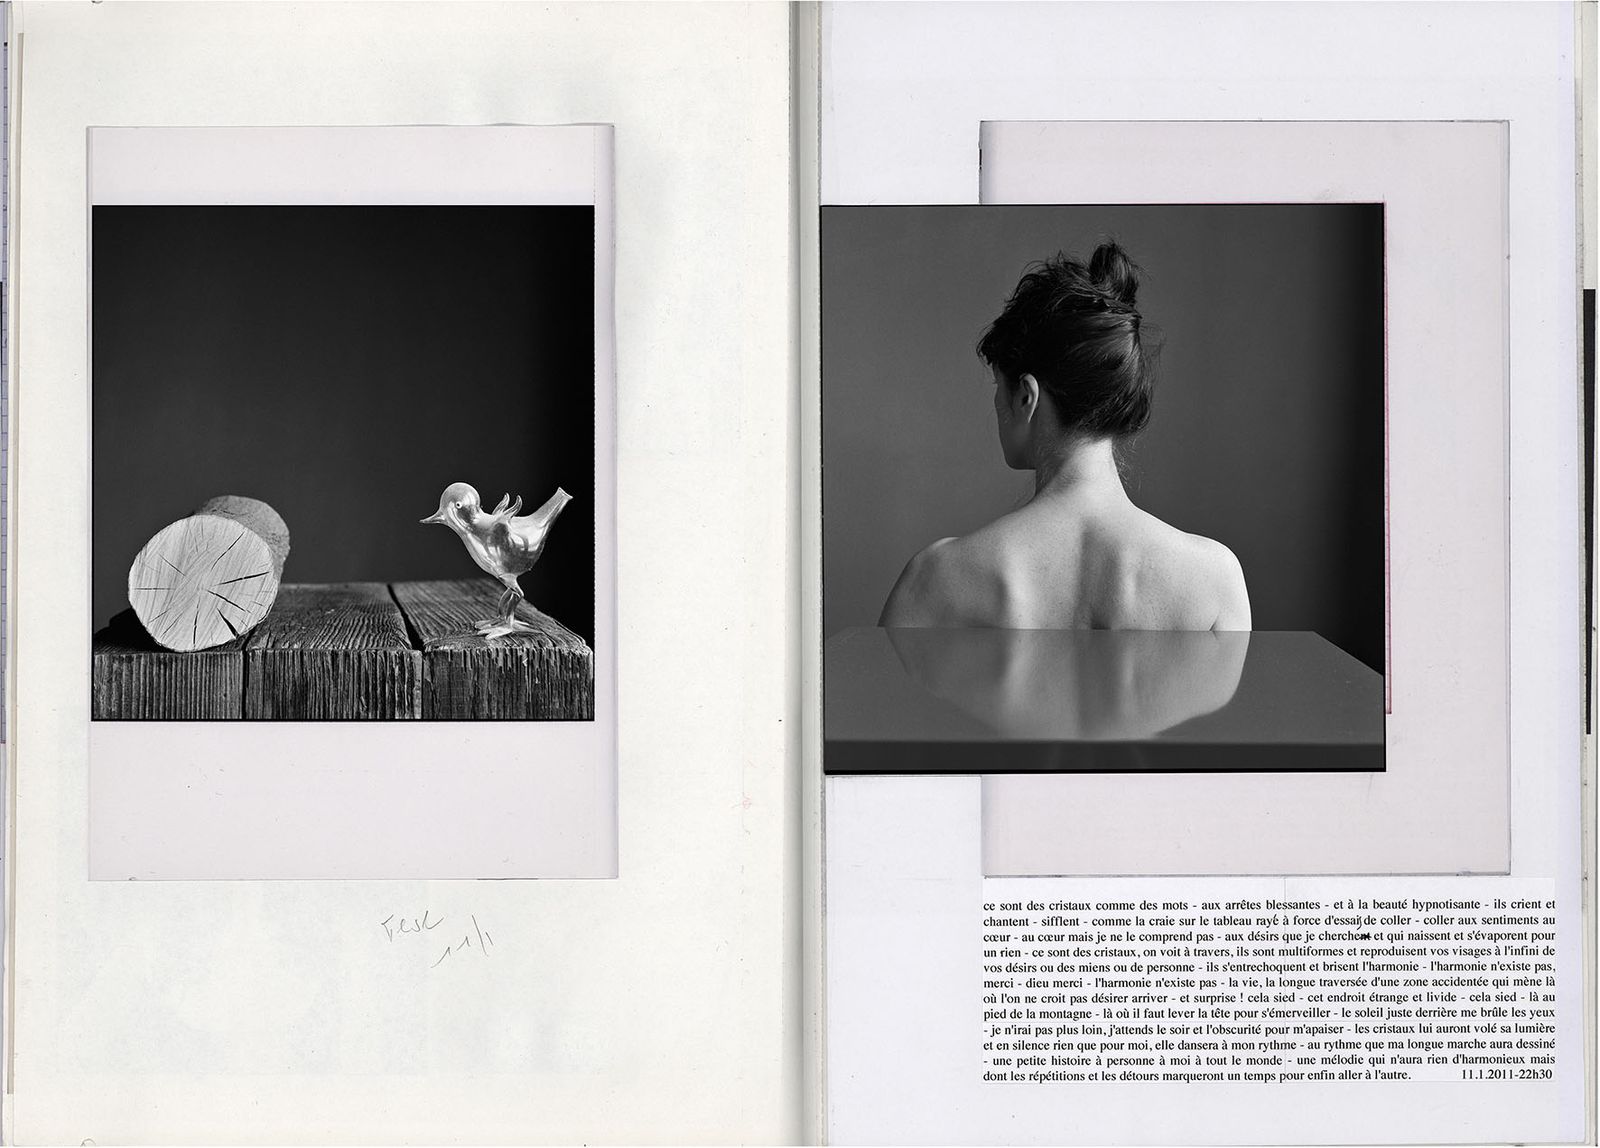 Photobook Review: L’Amoureuse by Anne De Gelas